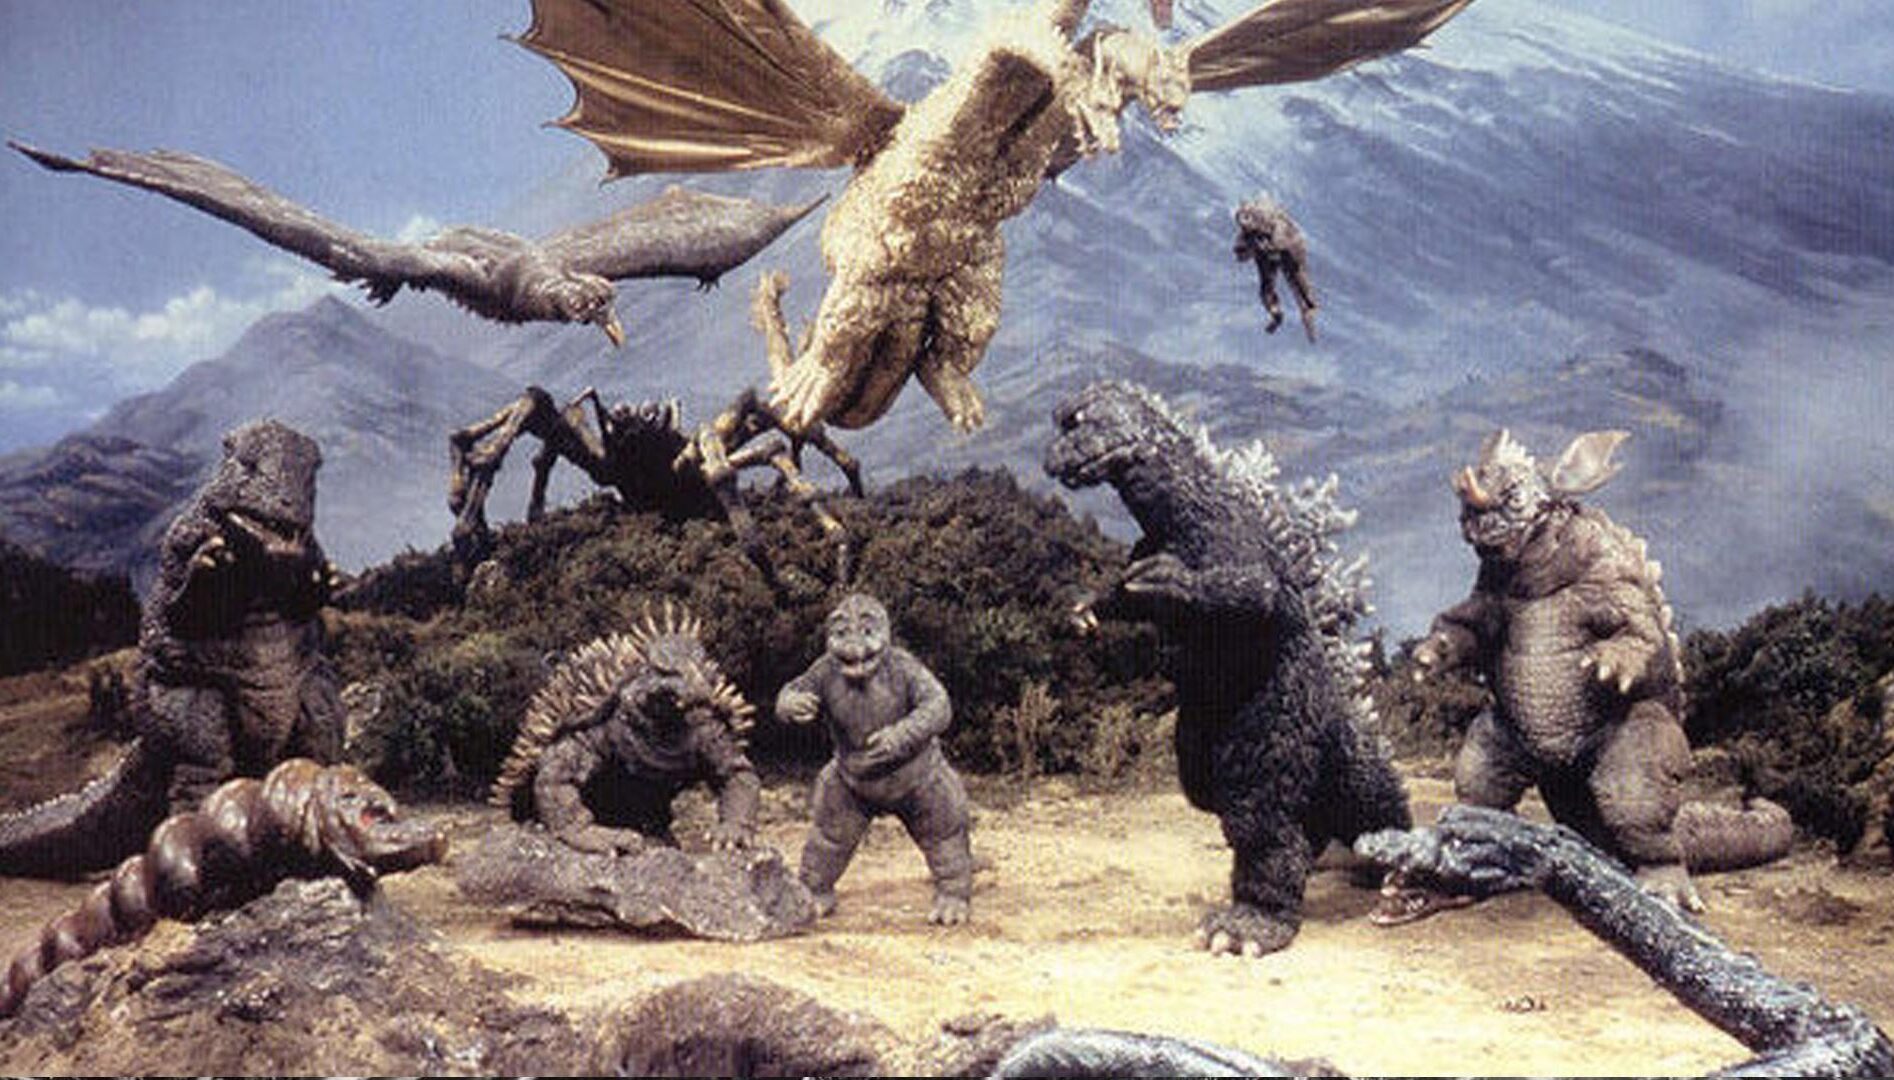 Film still of kaiju, monsters from Godzilla movies